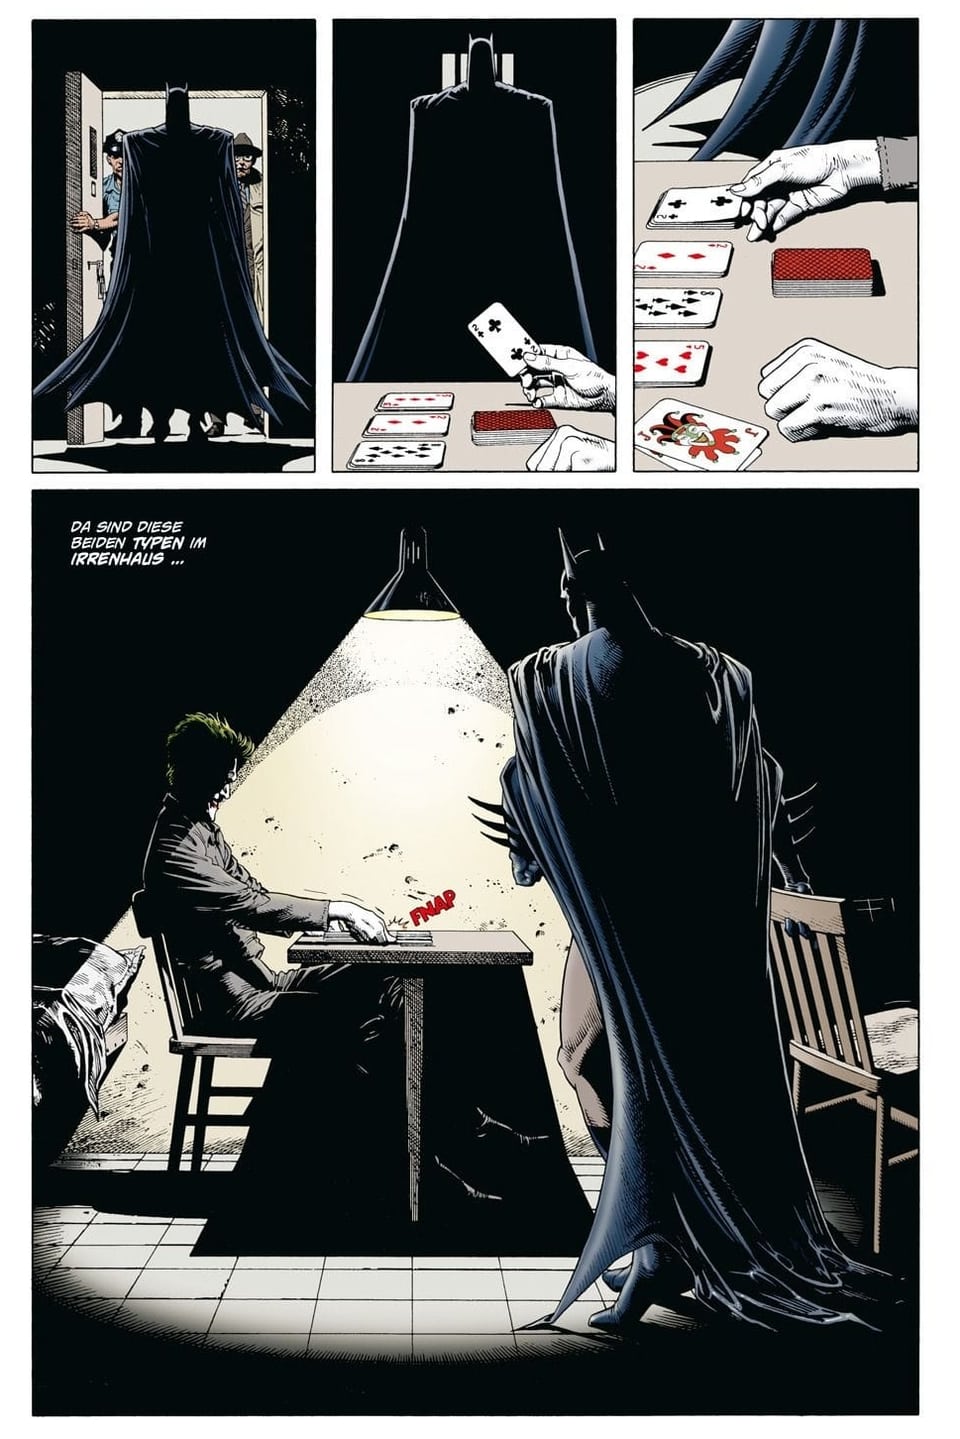 Seite aus einem Comicbuch: Eine Gestalt in schwarzem Umhang betritt einen Raum, in dem ein andere Person Karten spielt.